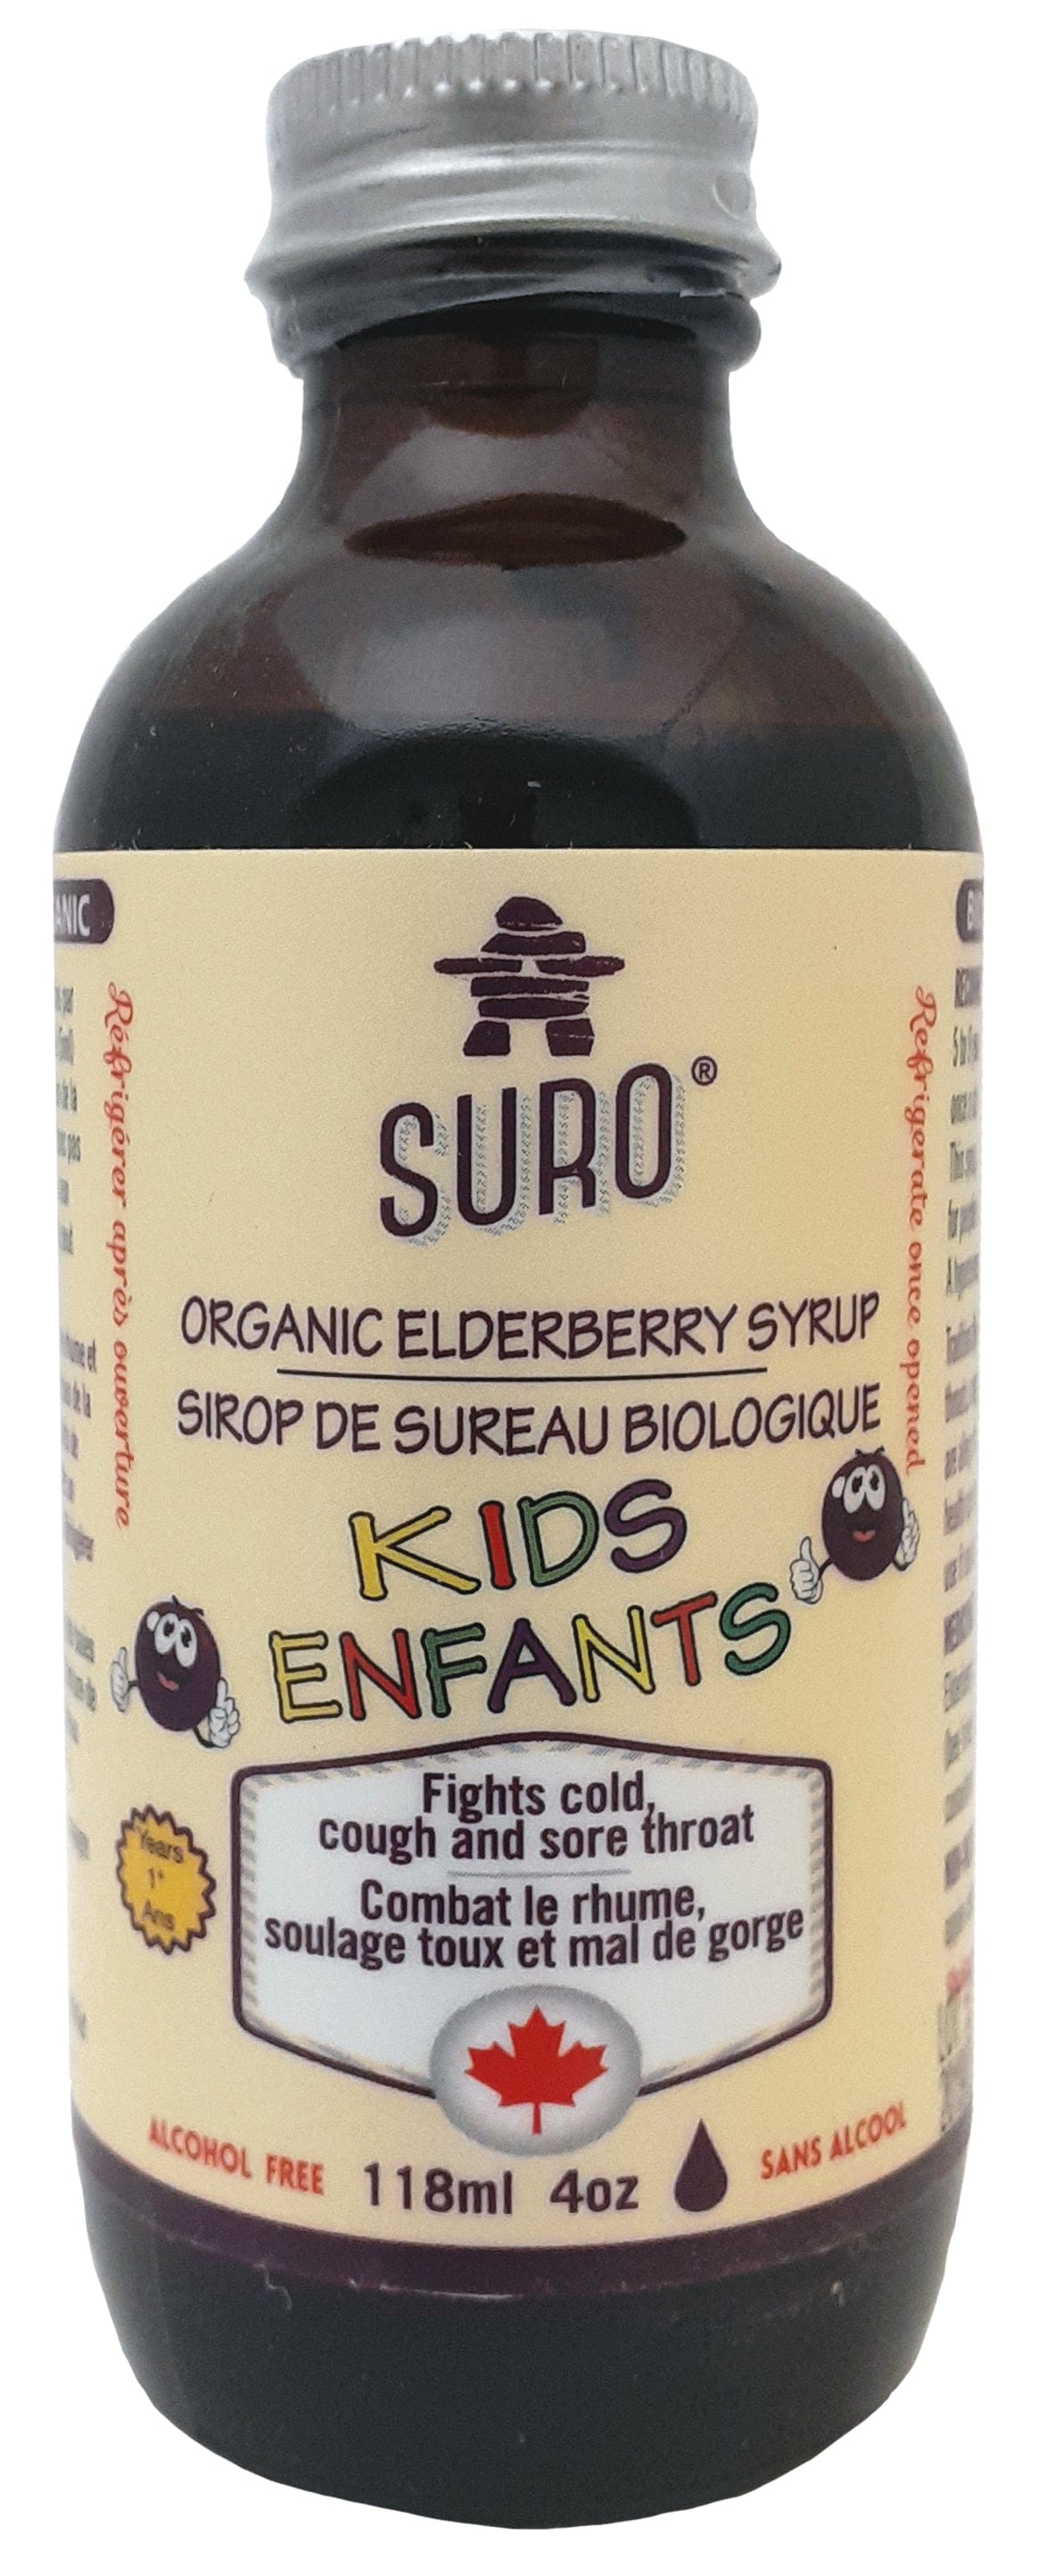 SURO Suppléments Sirop de sureau bio enfants (combat rhume,soulage toux ,mal gorge) 118ml